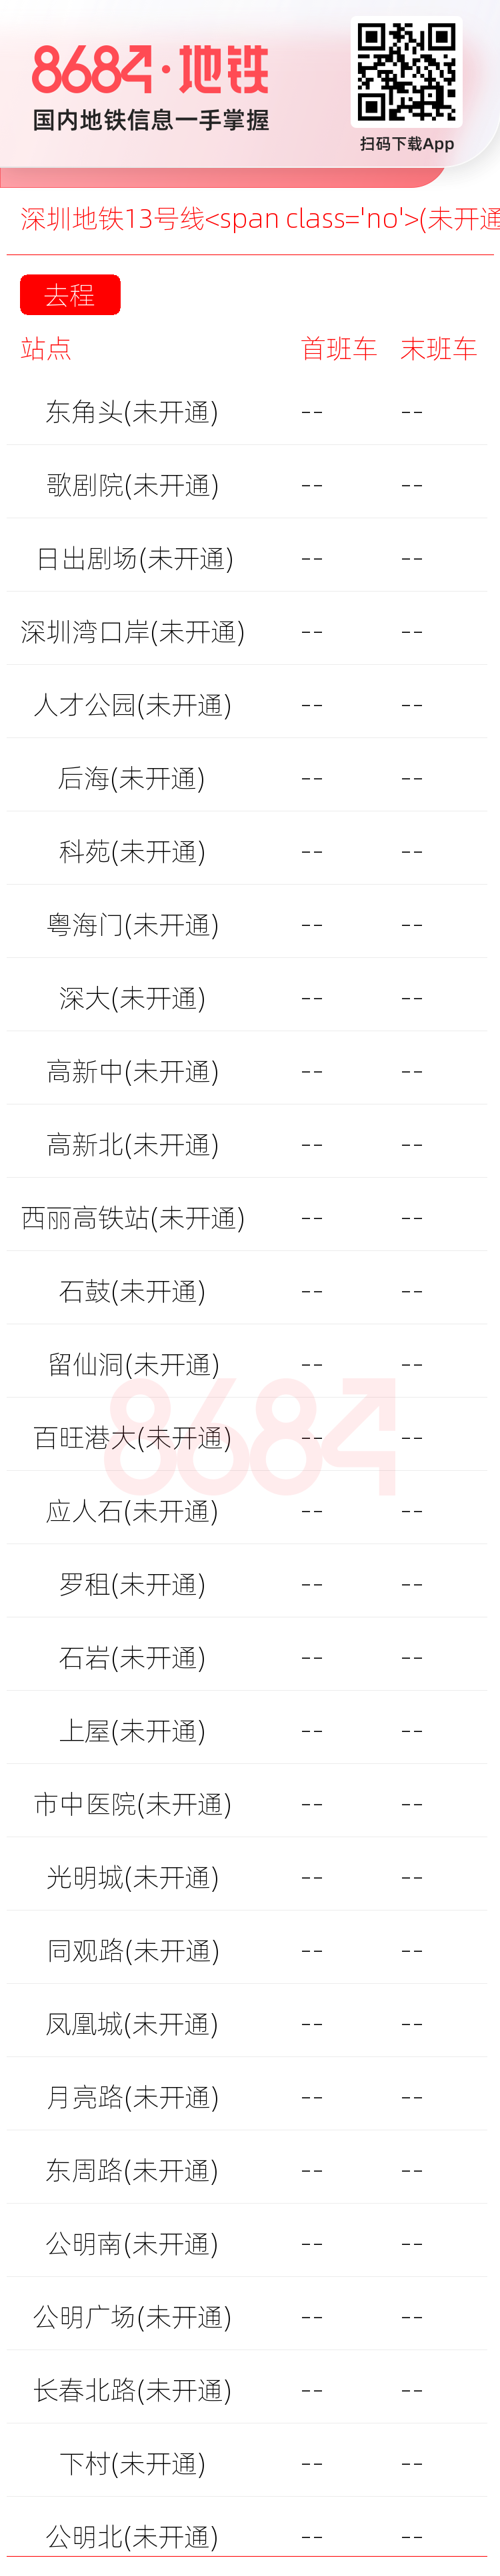 深圳地铁13号线<span class='no'>(未开通)</span>运营时间表